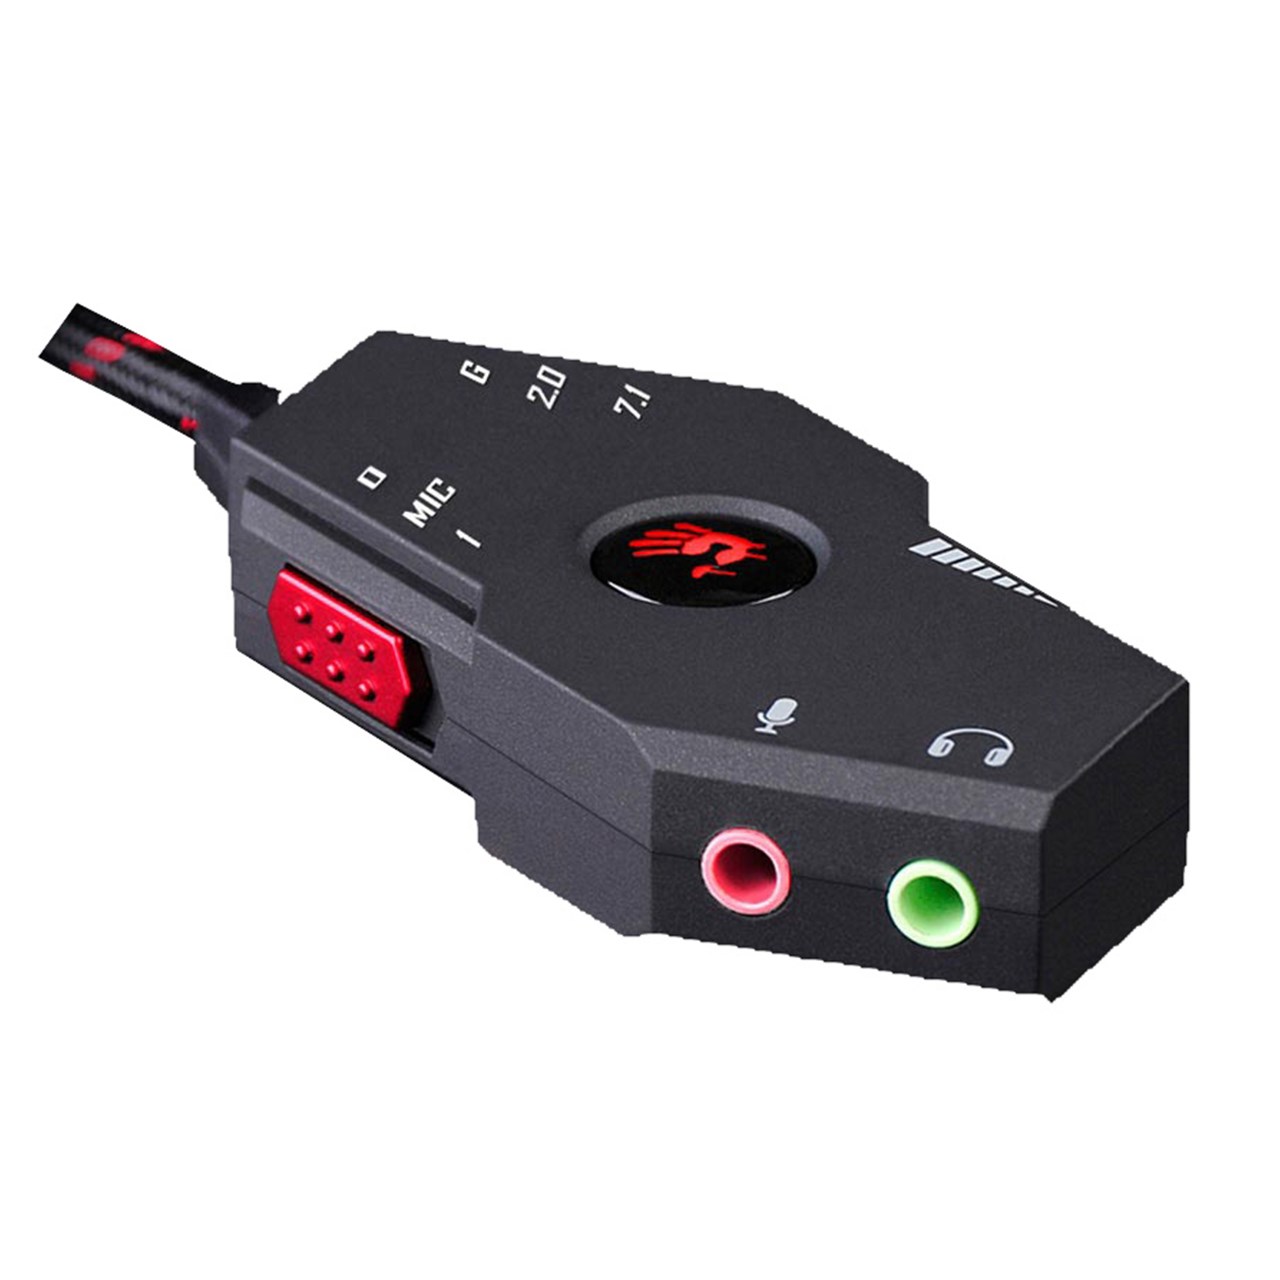 تصویر  کنترل کننده صدای هدست بازی ایفورتک مدل REMOTE CONTROL SOUND A4TECH GK-480